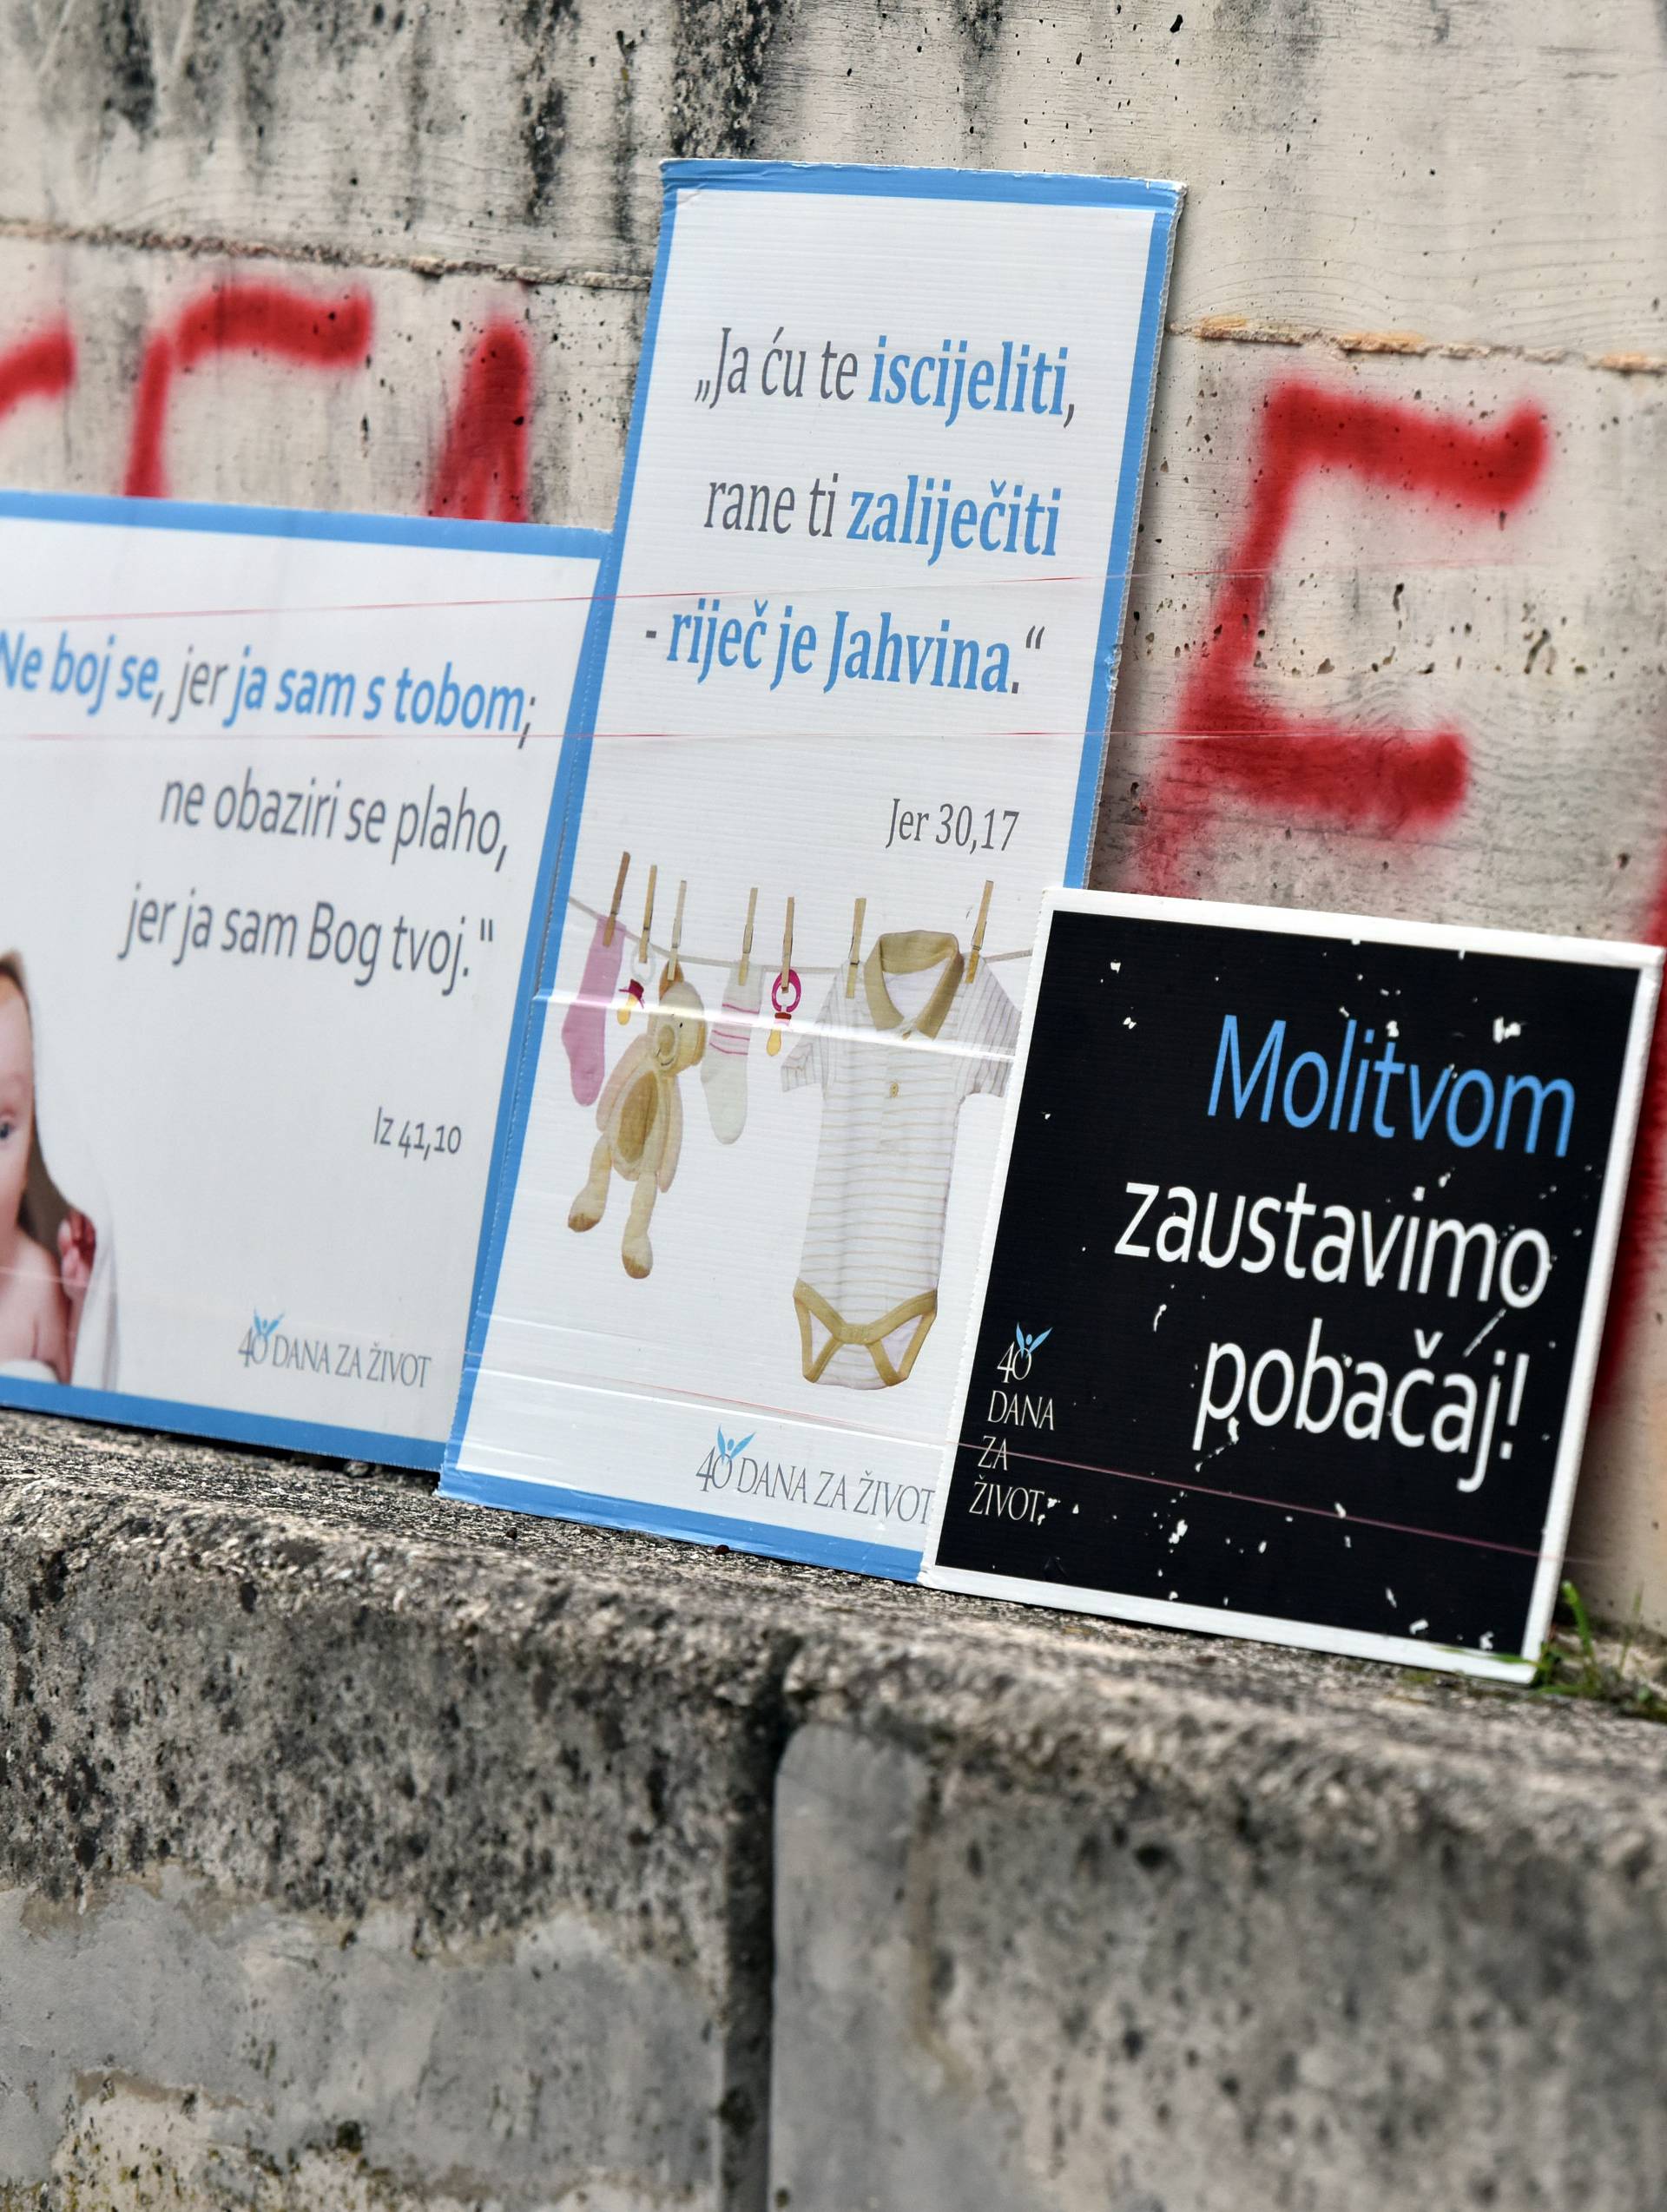 Aktivisti Prolife.hr pokrenuli veliku peticiju protiv pobačaja